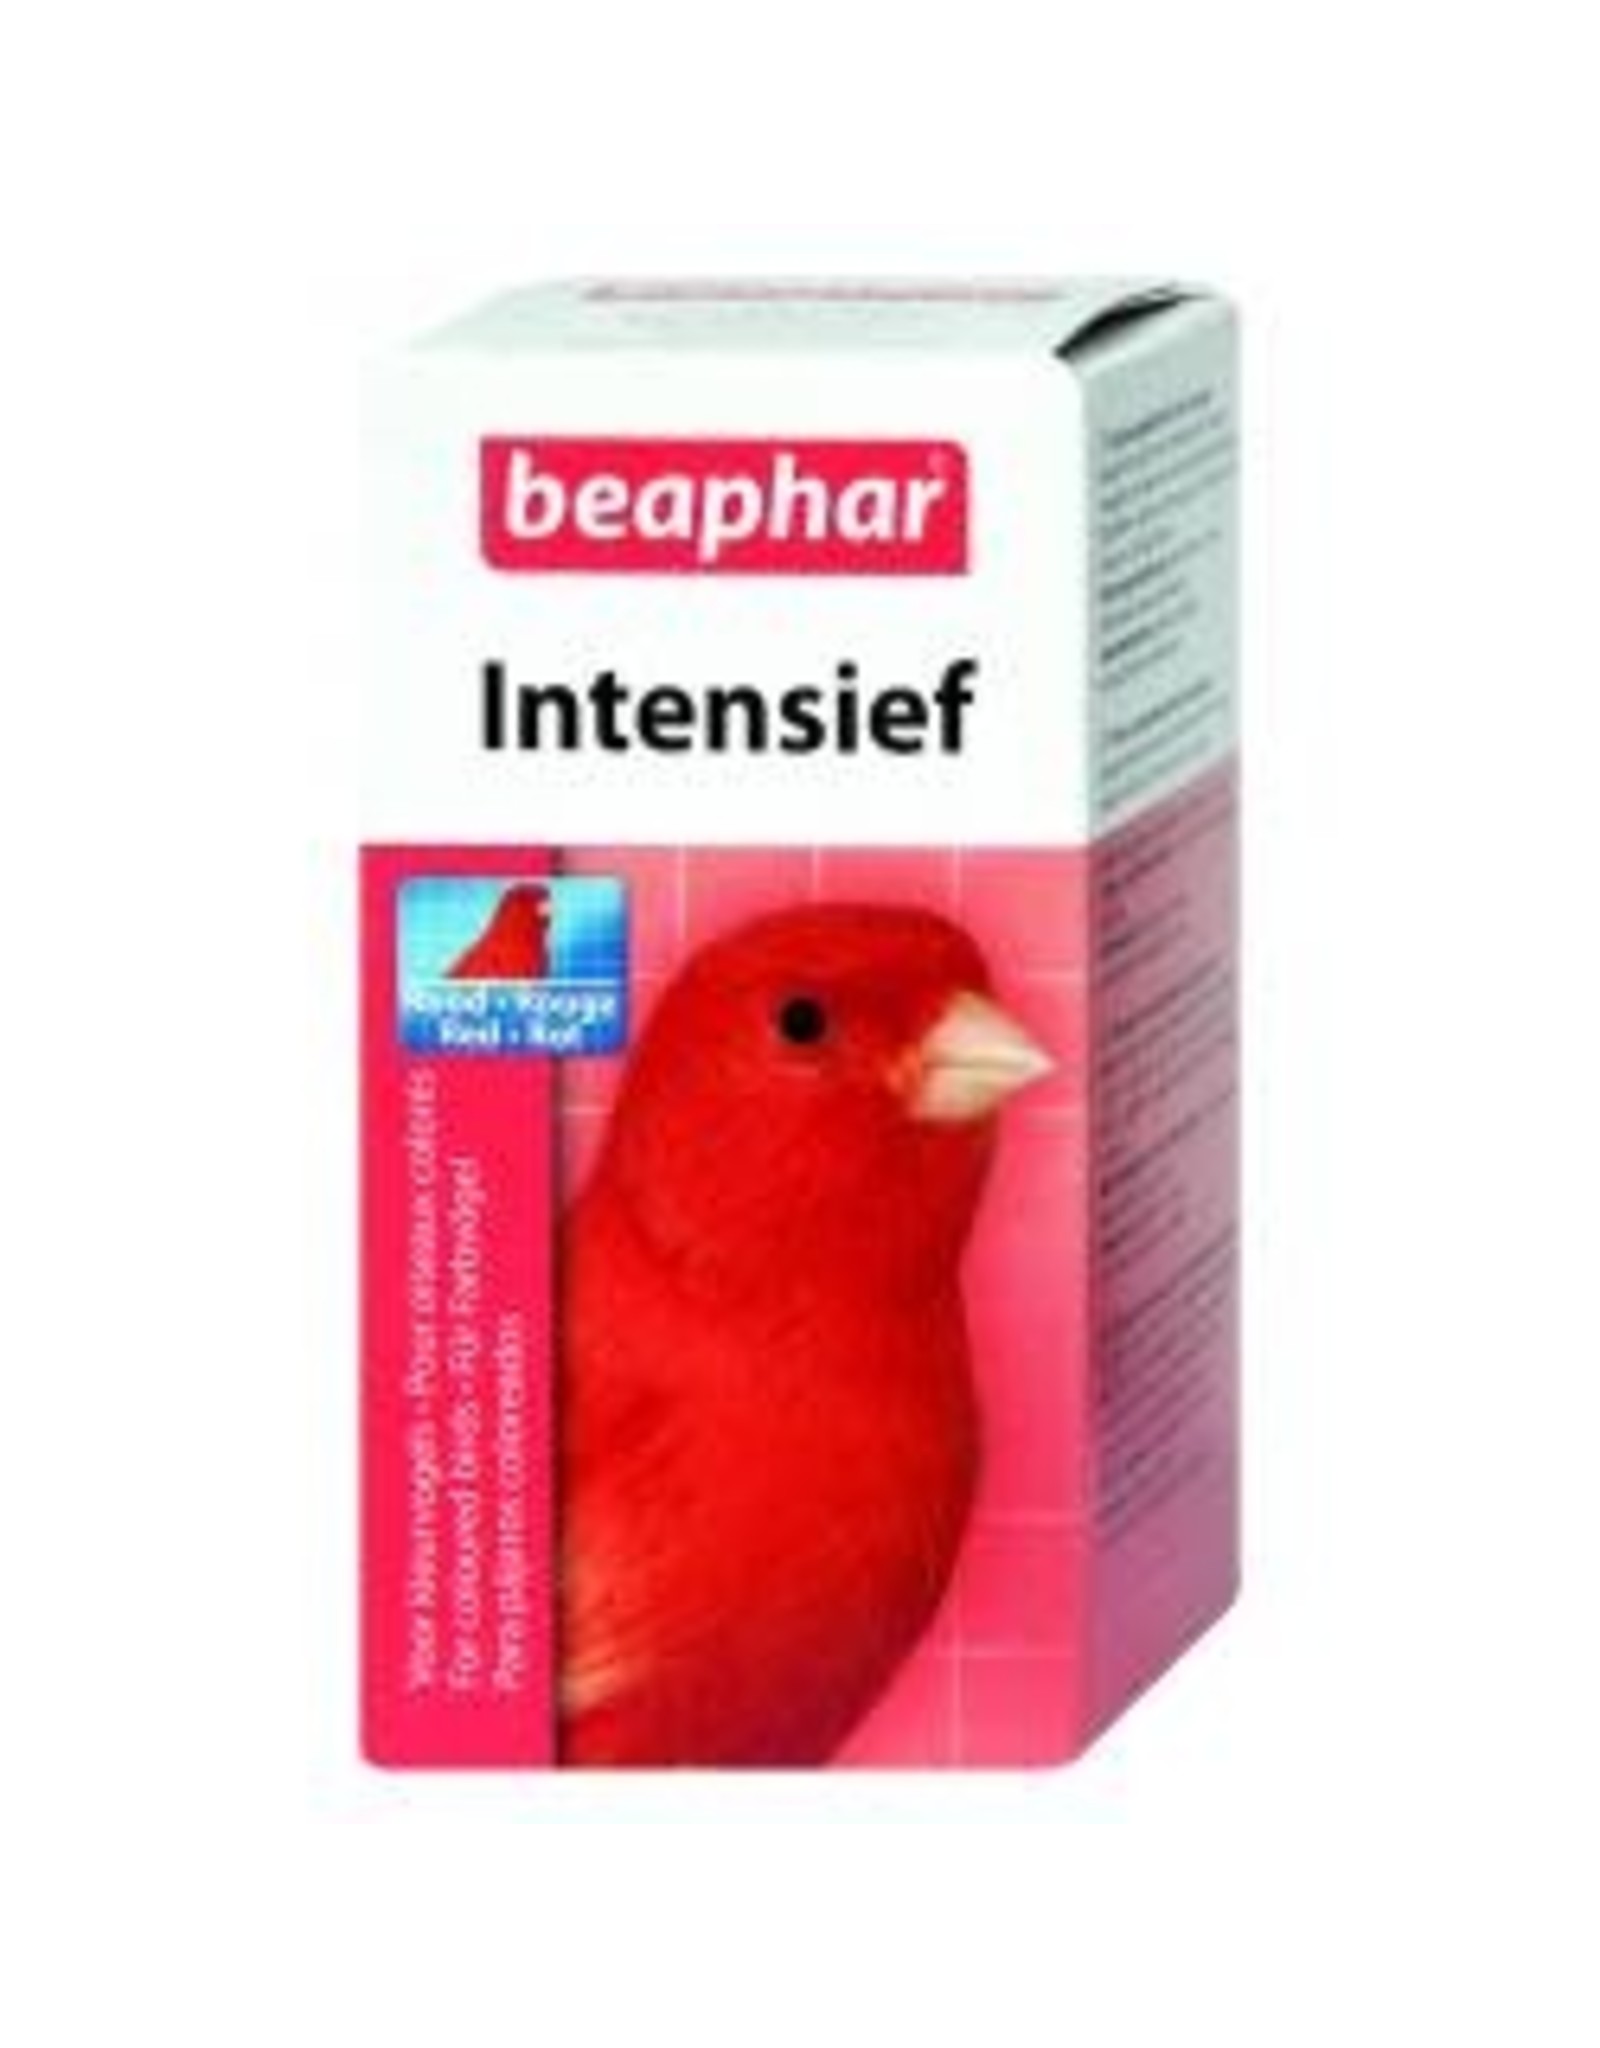 Beaphar Beaphar Intensief Red 10g